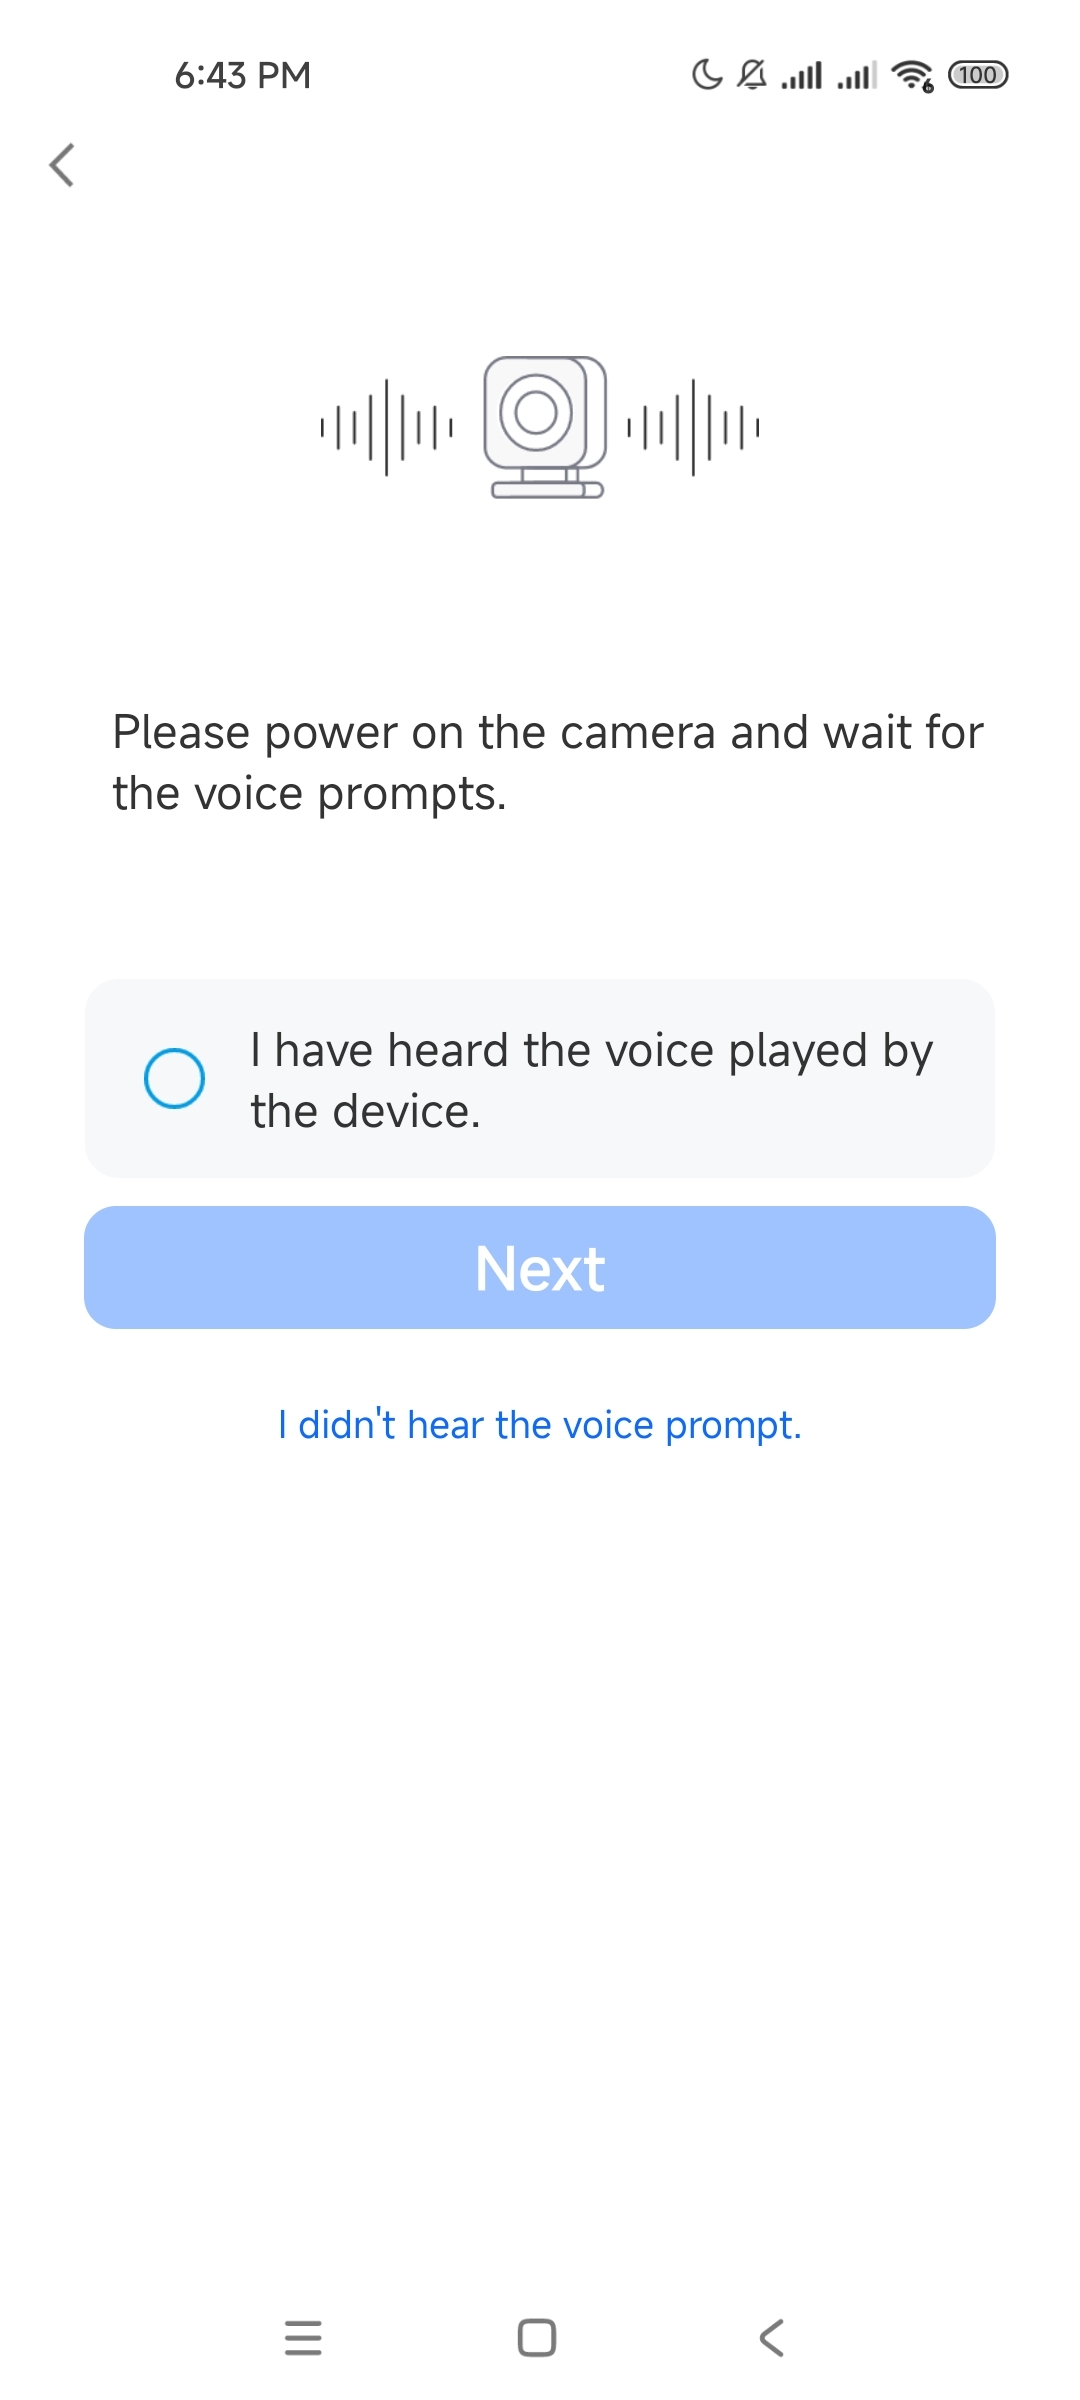 voiceprompt.jpg